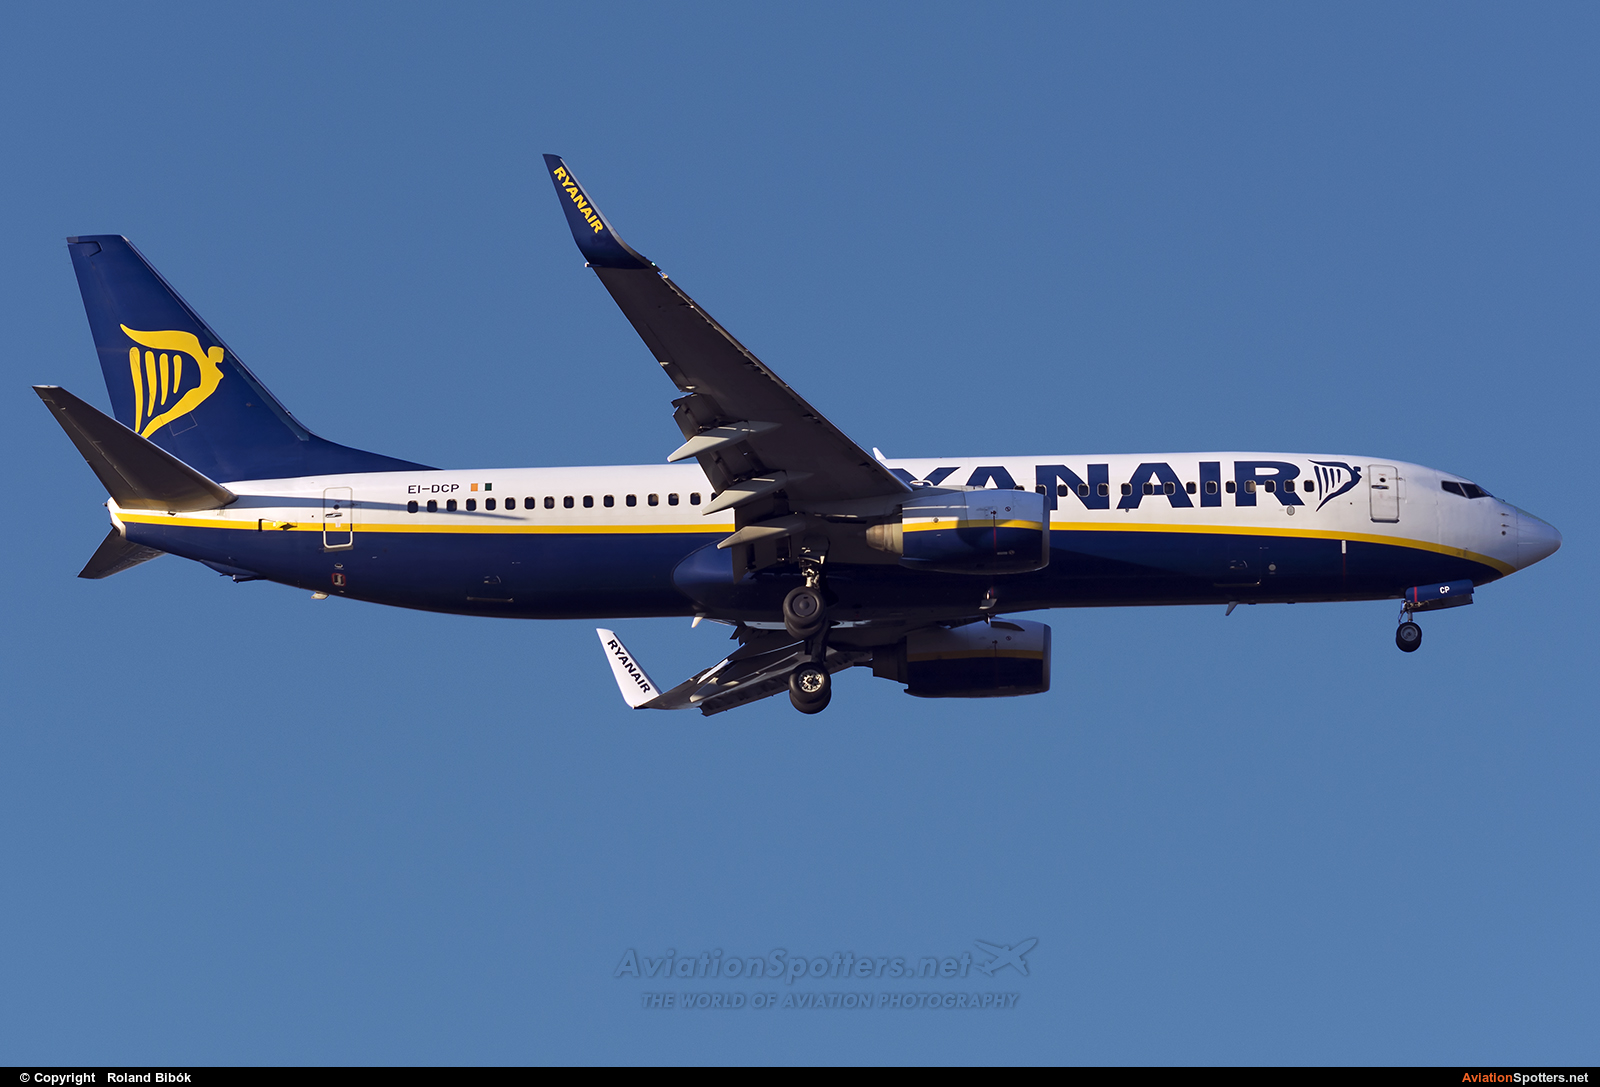 Ryanair  -  737-800  (EI-DCP) By Roland Bibók (Roland Bibok)